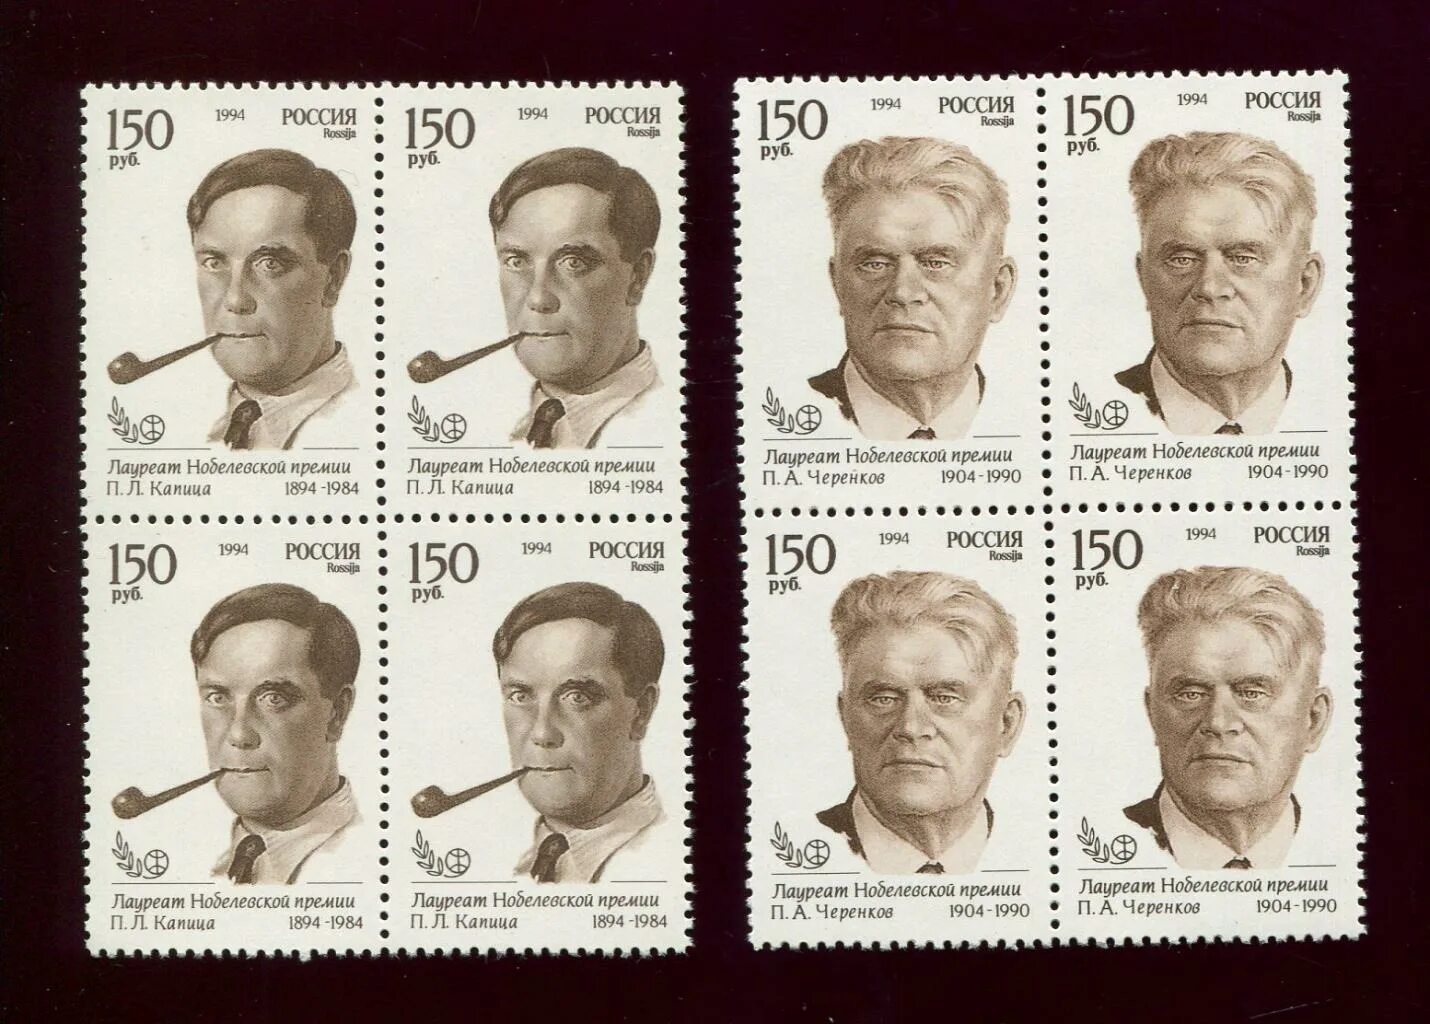 Нобелевские премии начало 20 века